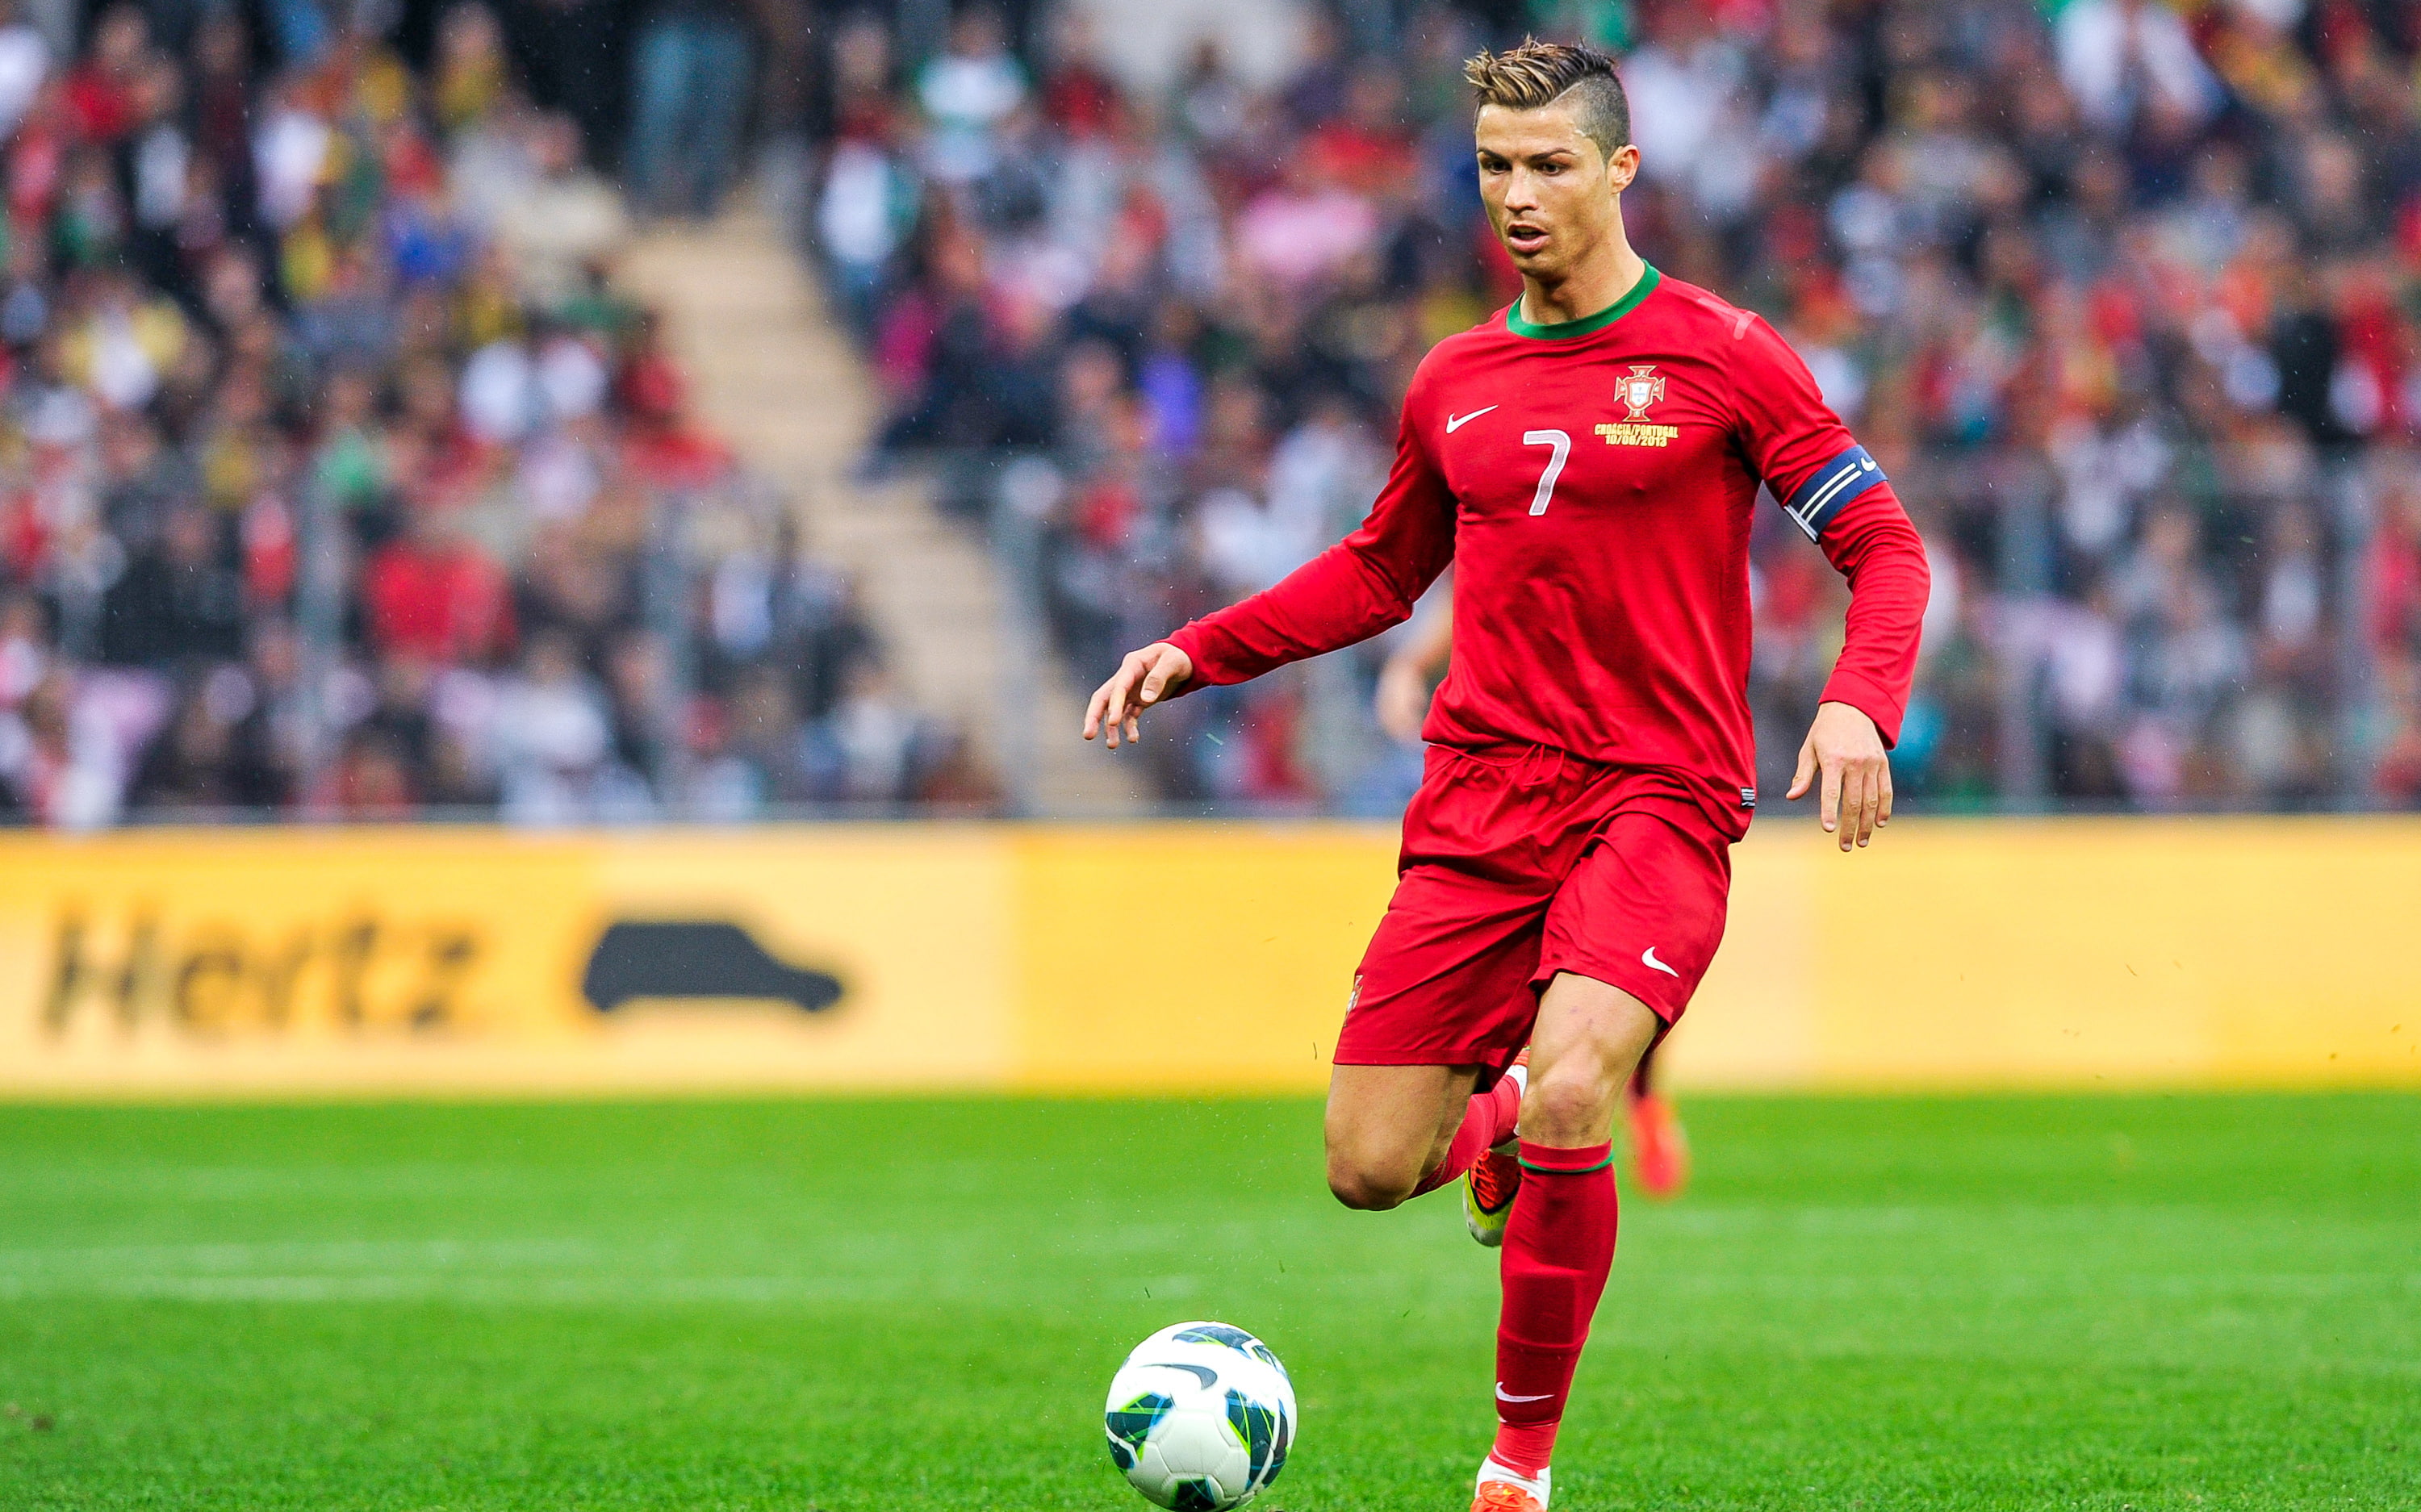 Football player, Portugal, Cristiano Ronaldo, sport, team sport